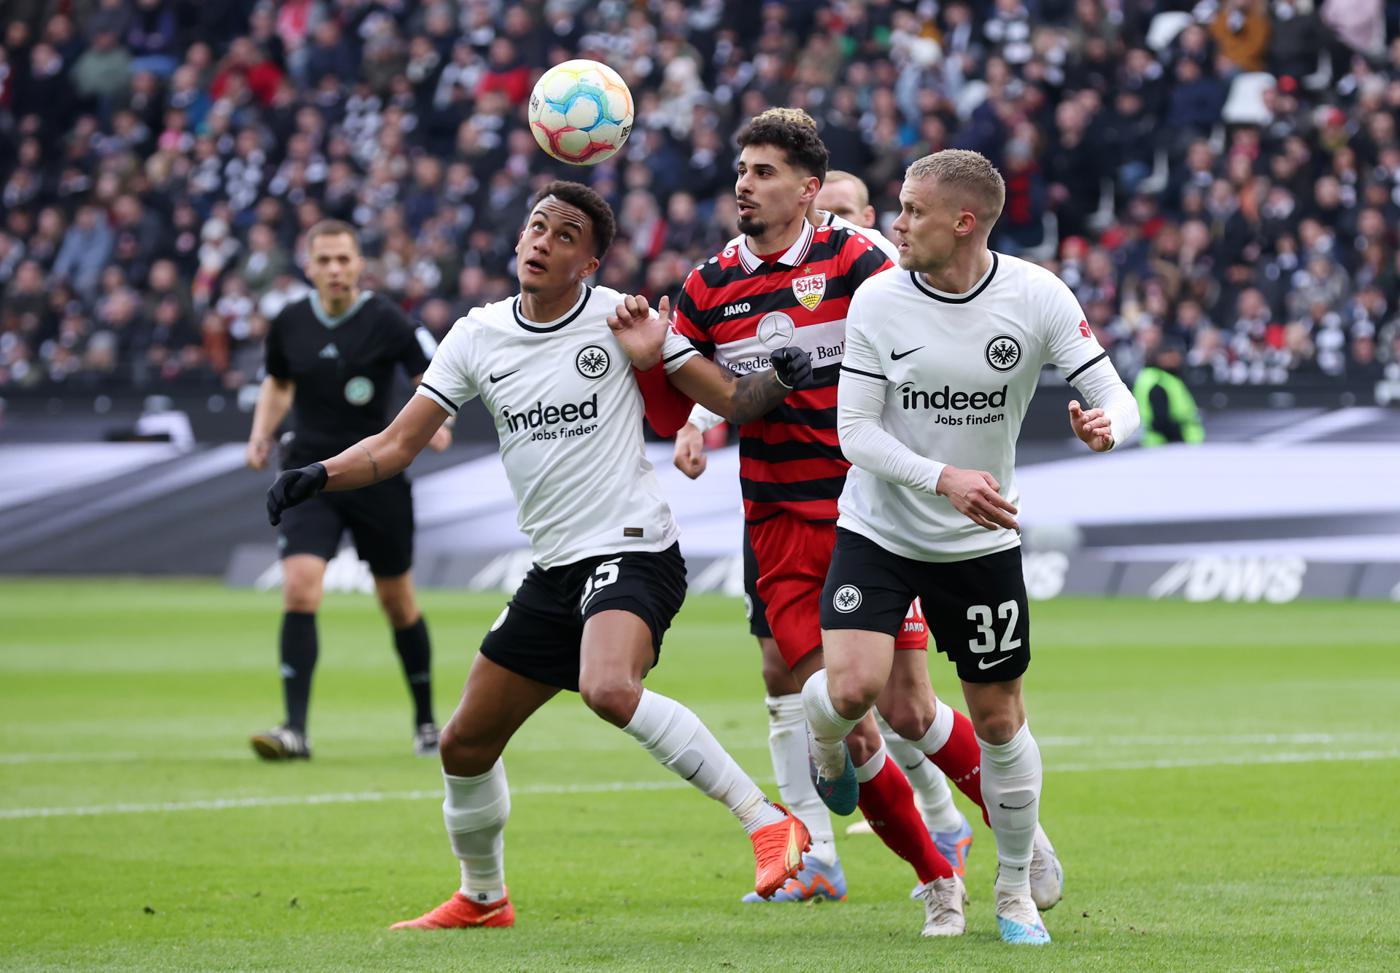 Eintracht gegen Stuttgart - 1:1. Deutsche Meisterschaft, Runde 24. Spielbericht, Statistik.